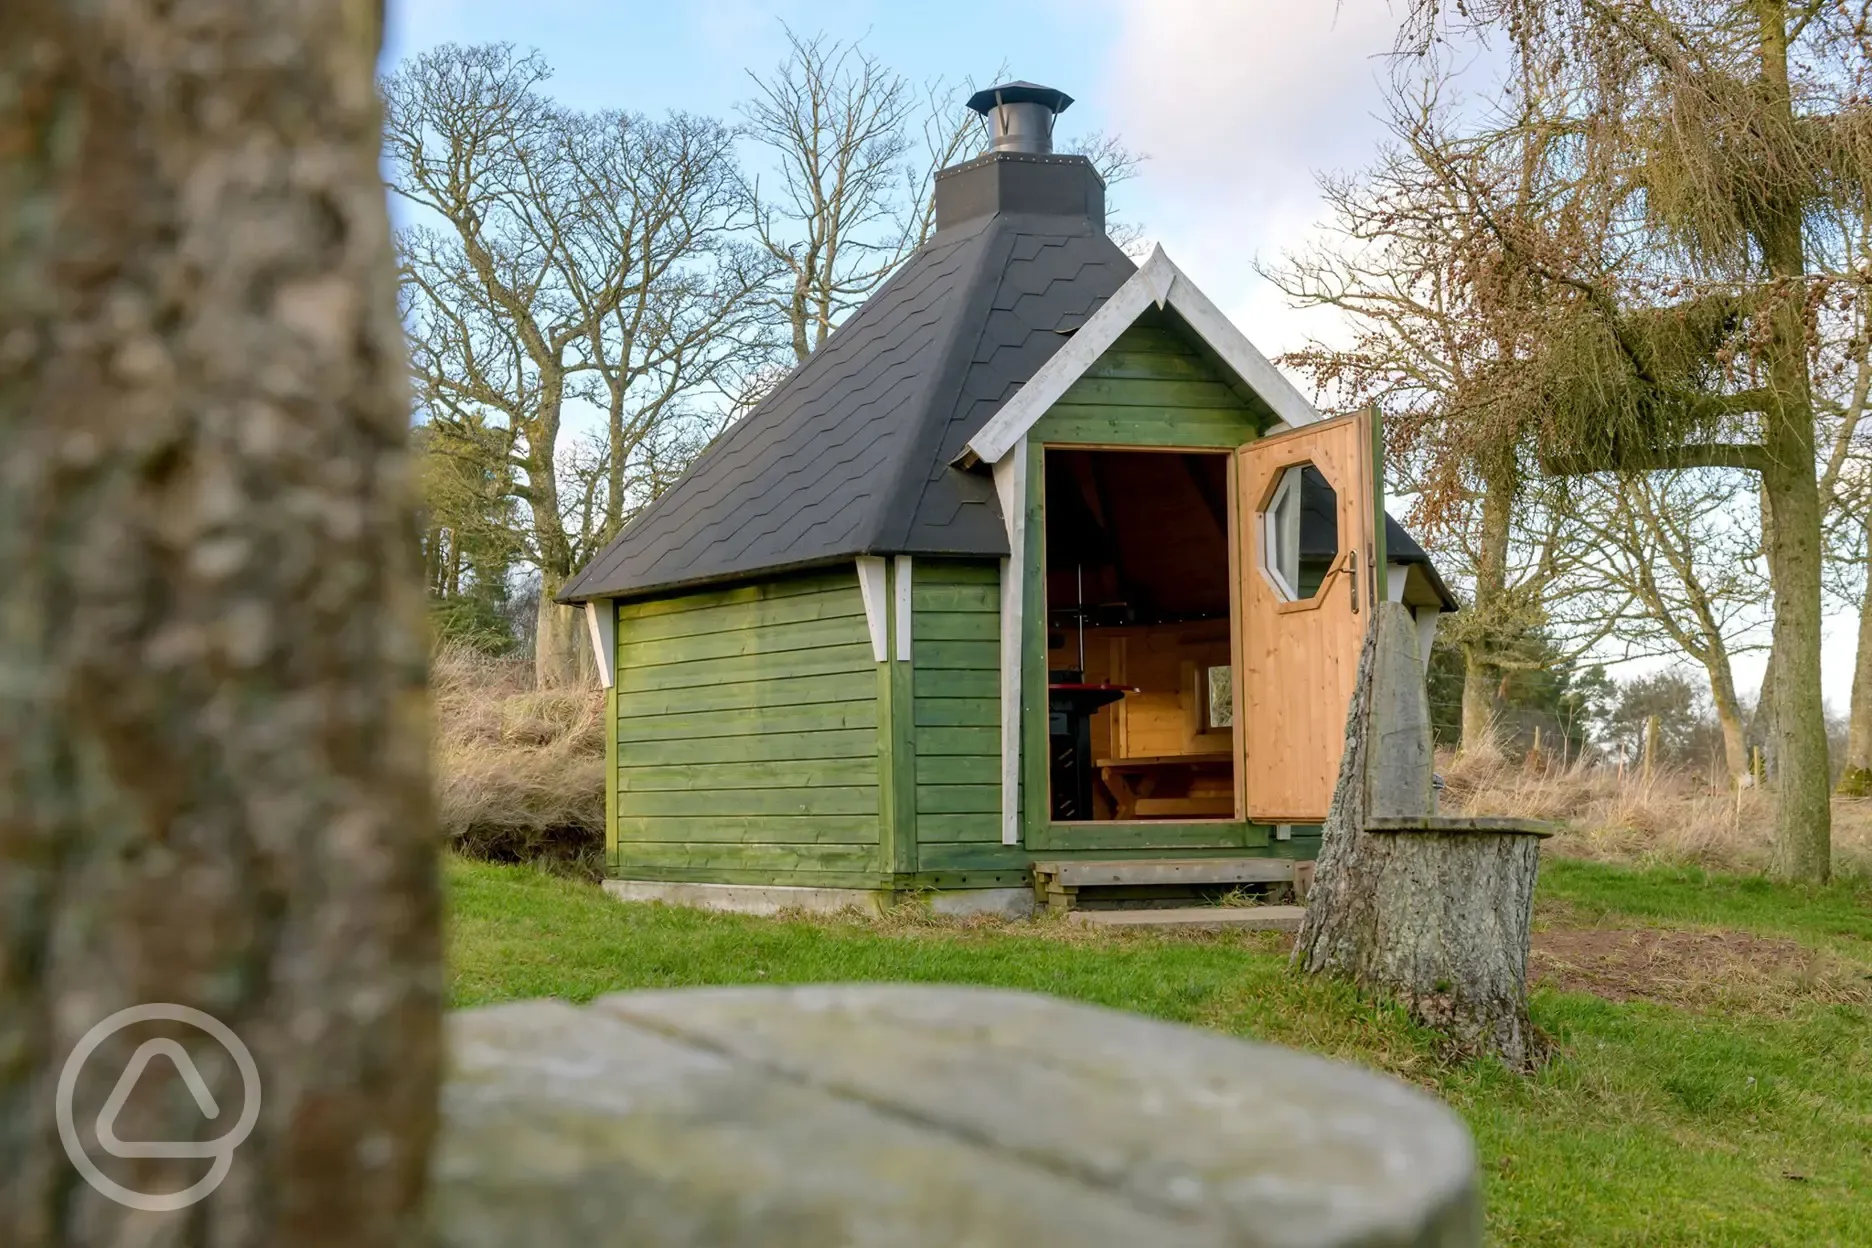 The Rowan pod BBQ hut